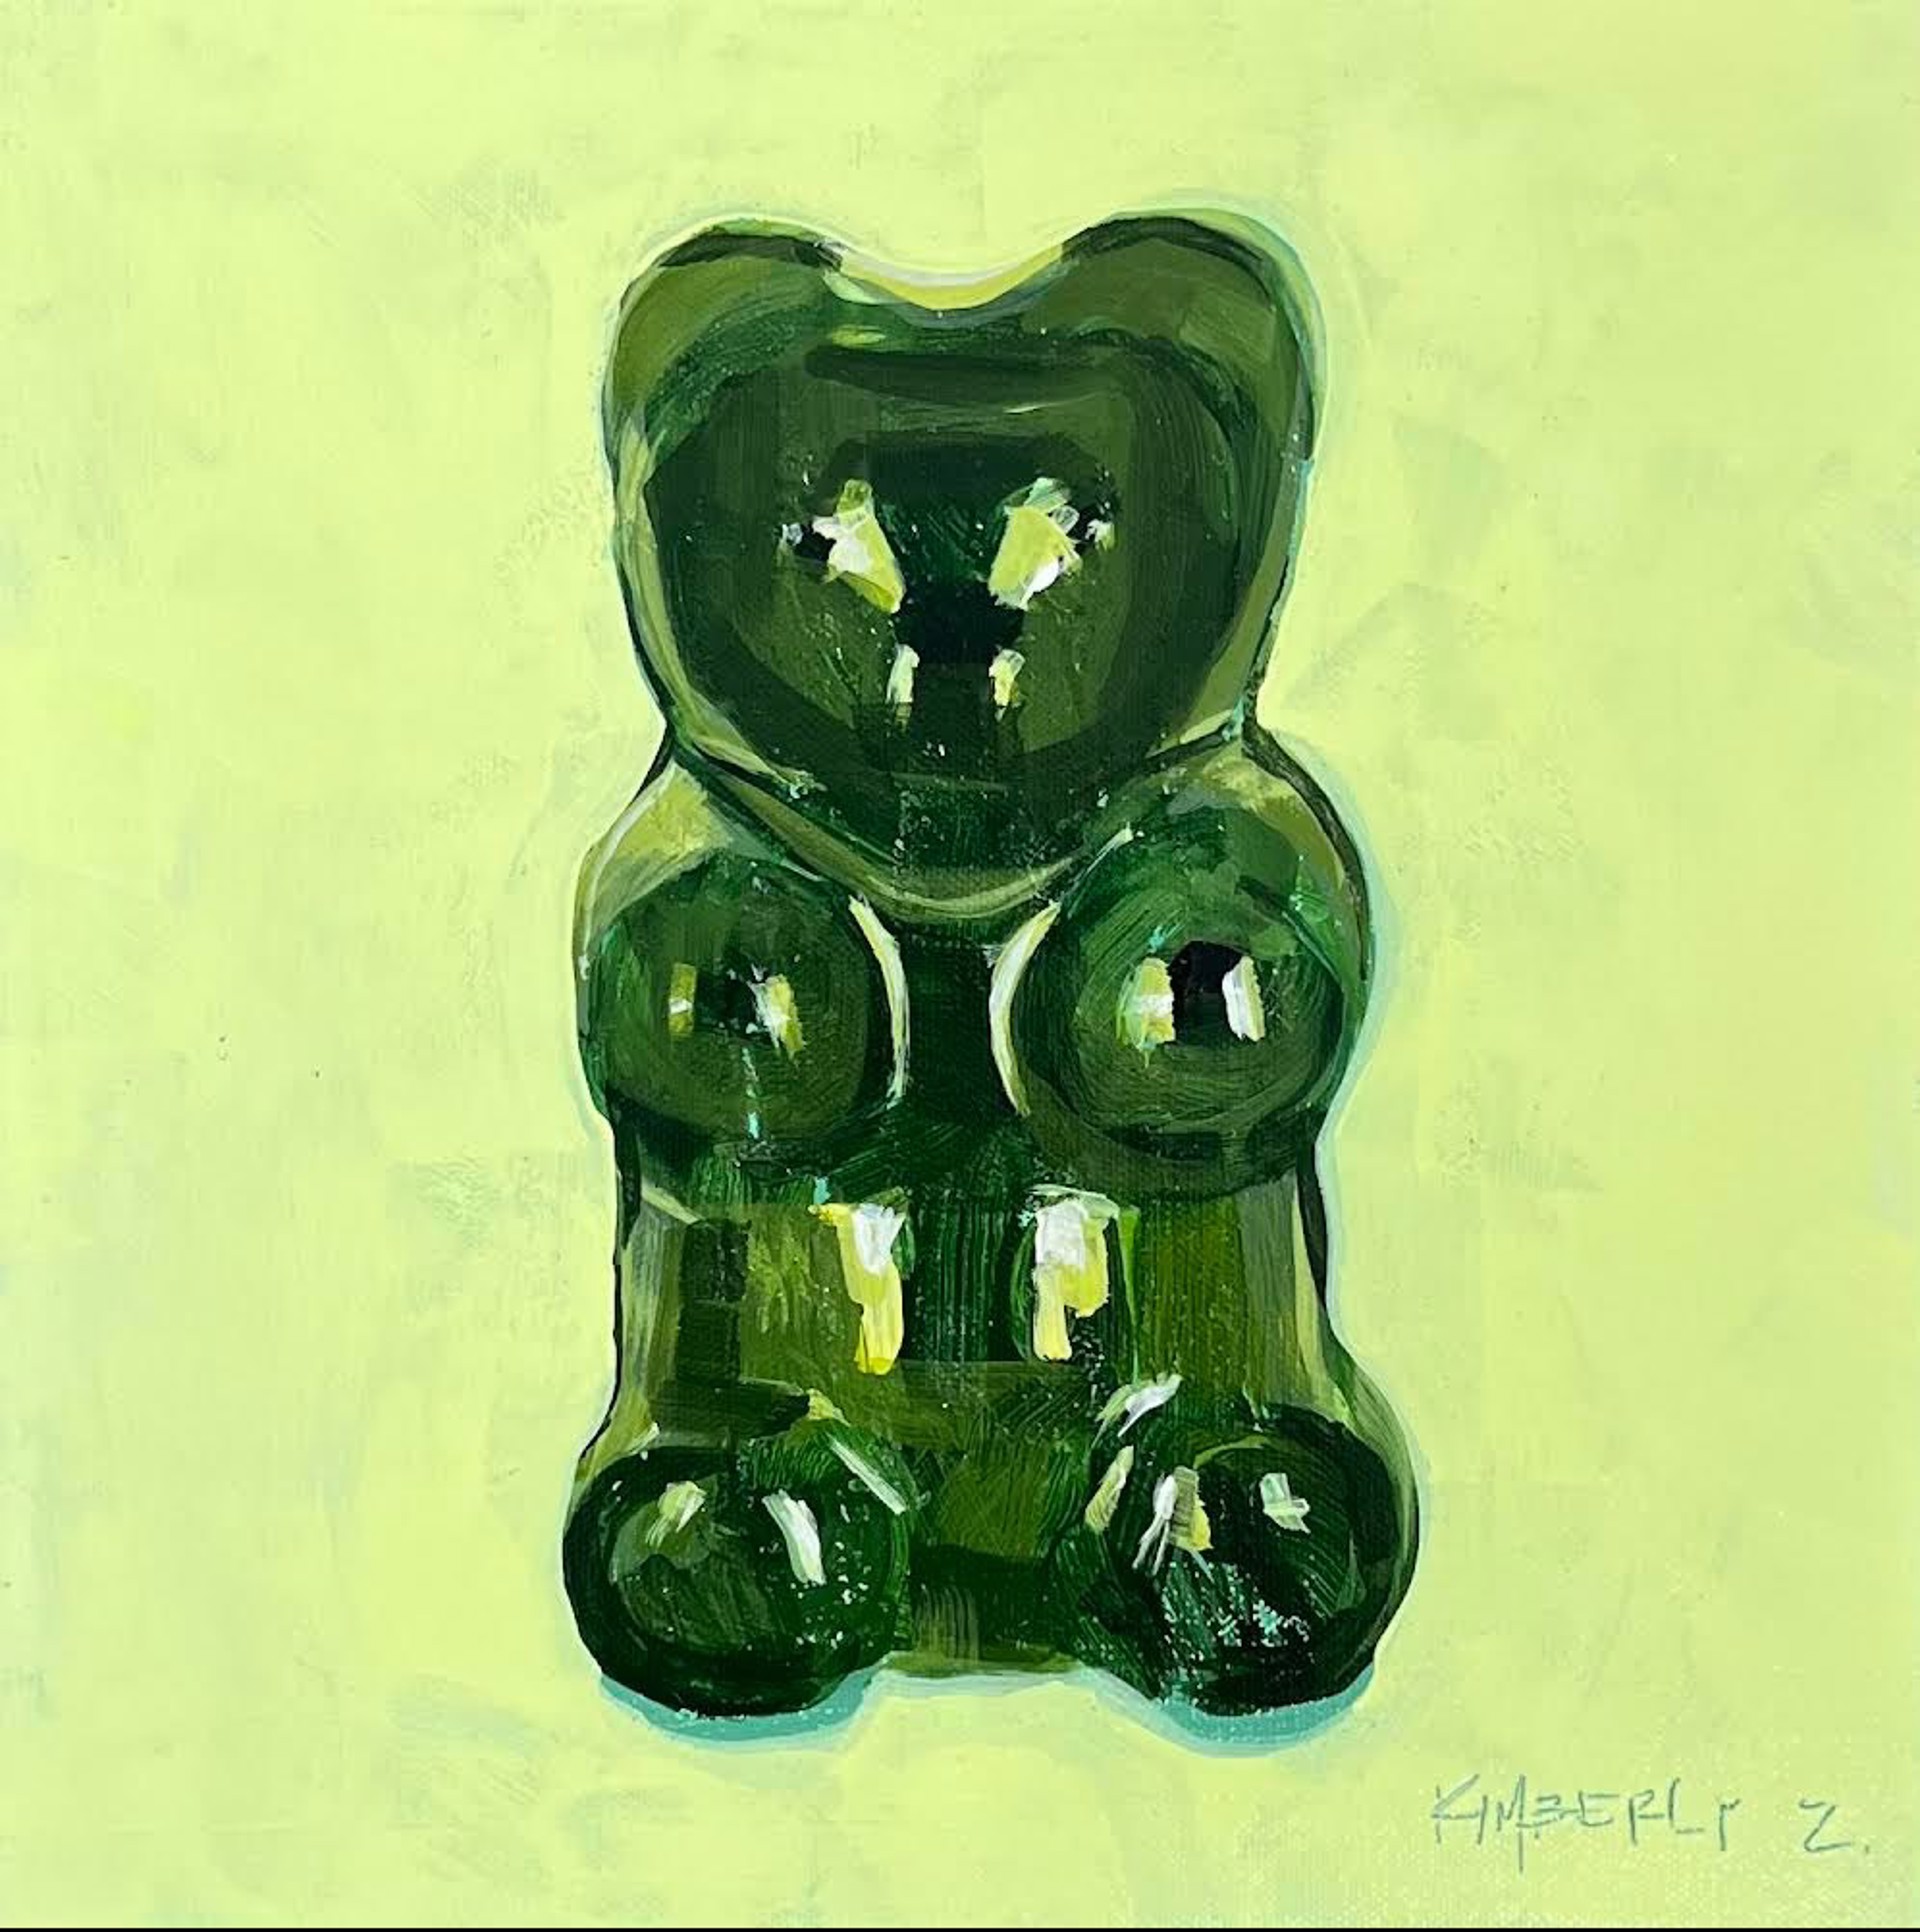 Gummy Bear by Kimberly Zukley